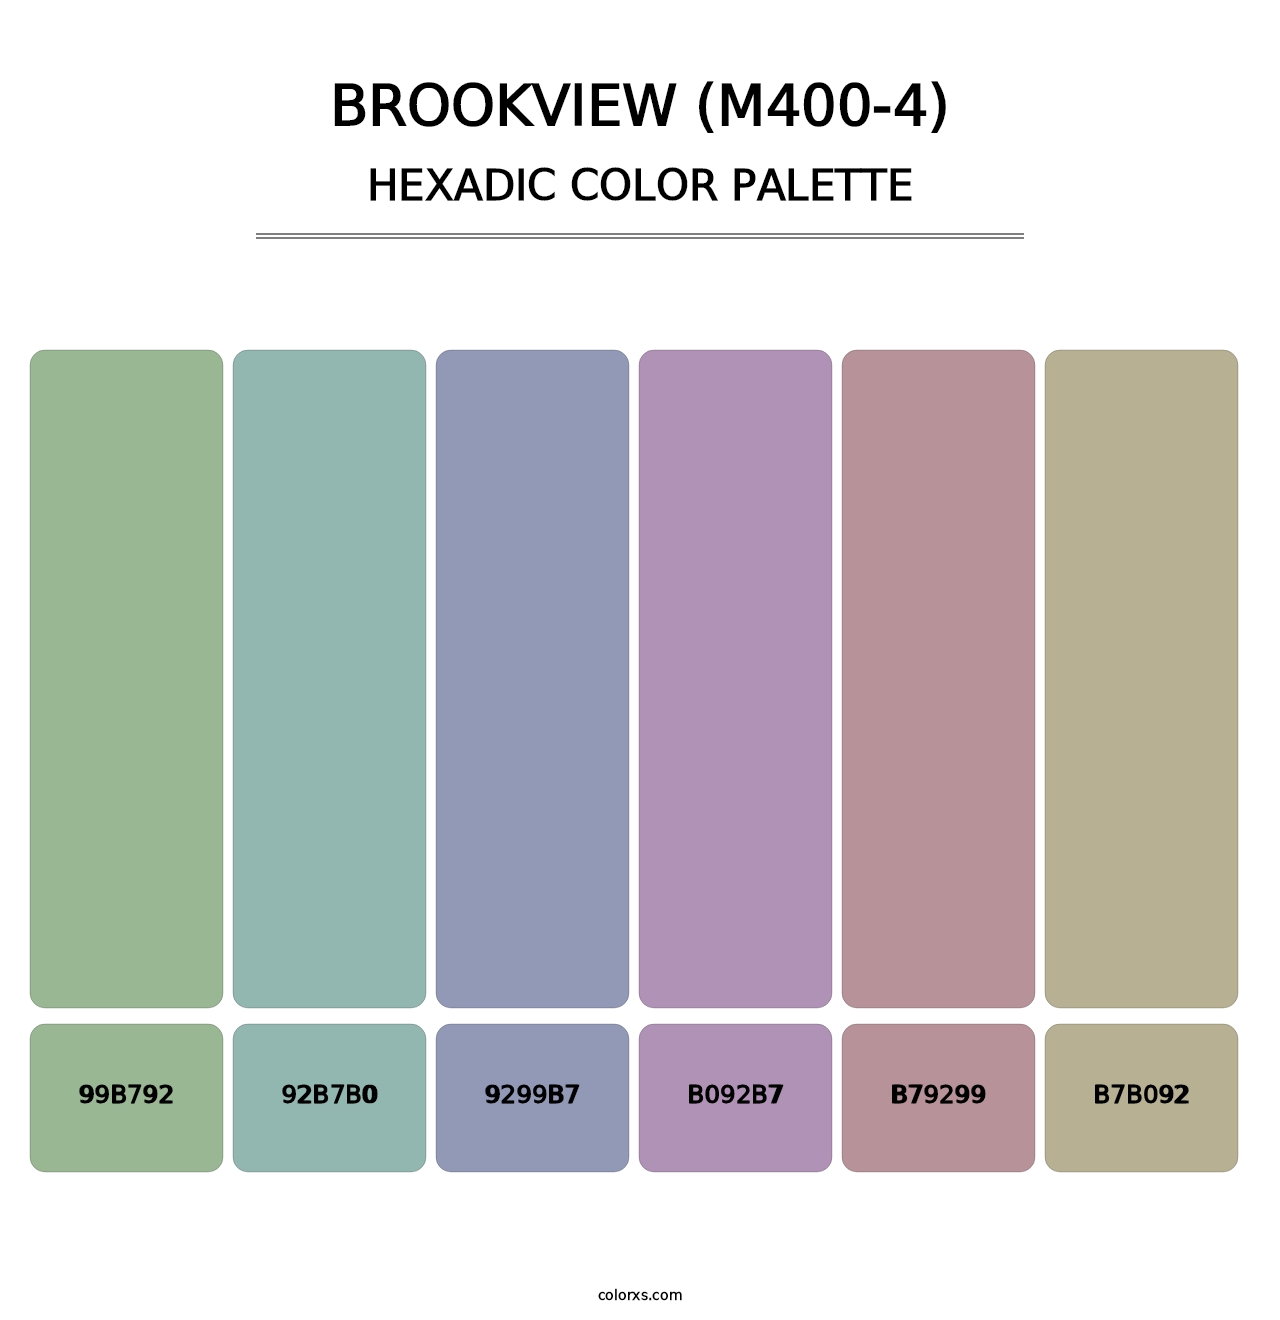 Brookview (M400-4) - Hexadic Color Palette